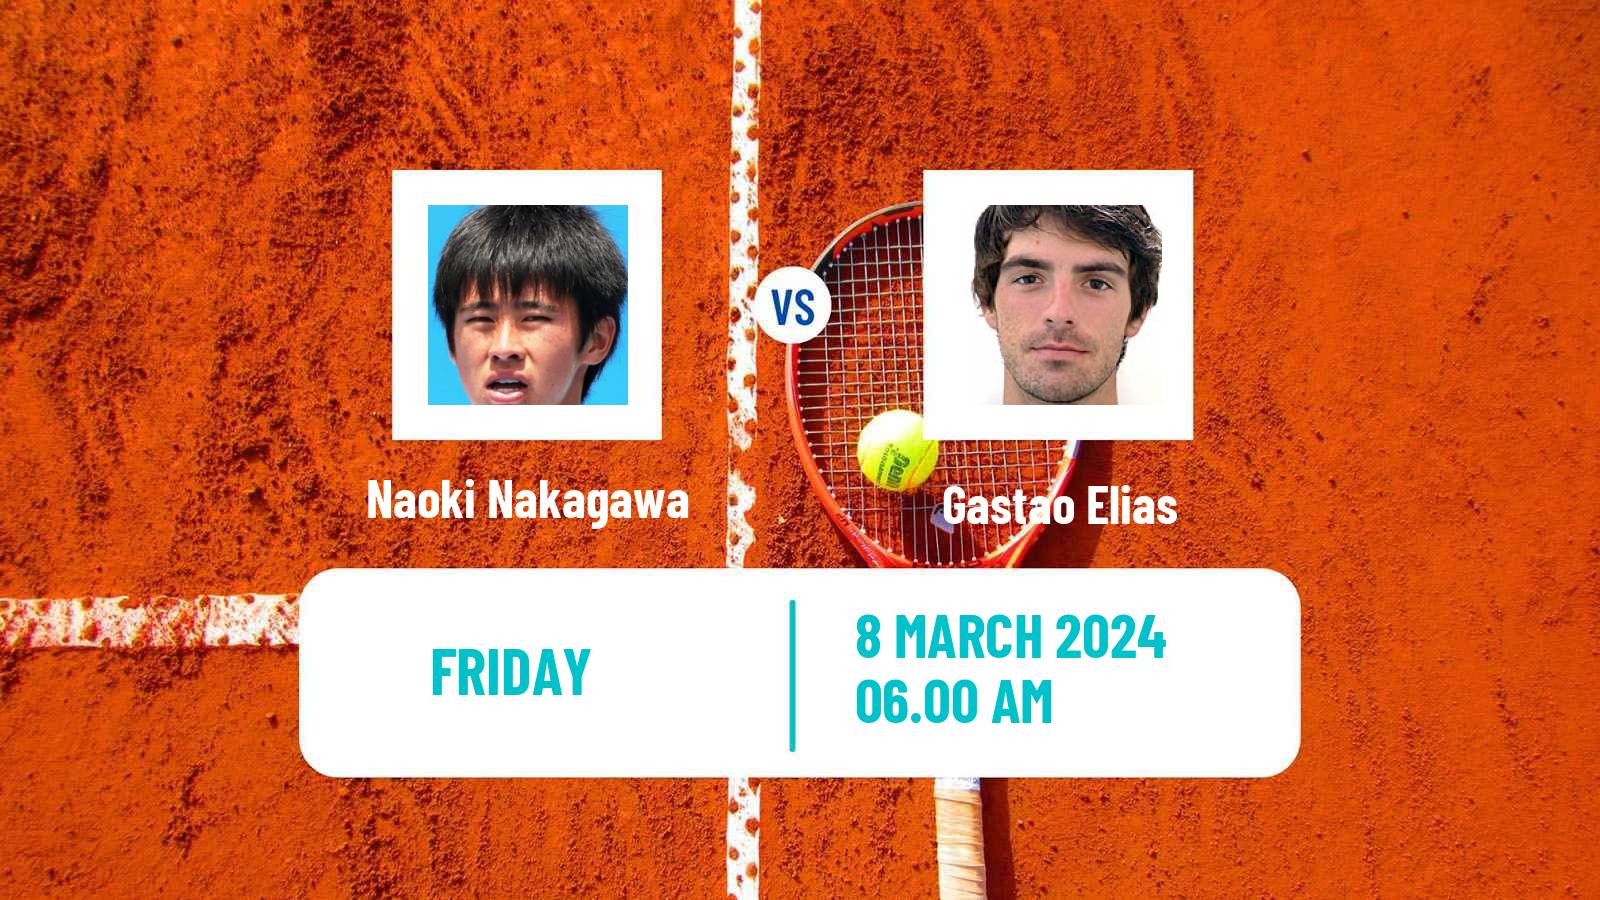 Tennis ITF M25 Quinta Do Lago Men Naoki Nakagawa - Gastao Elias